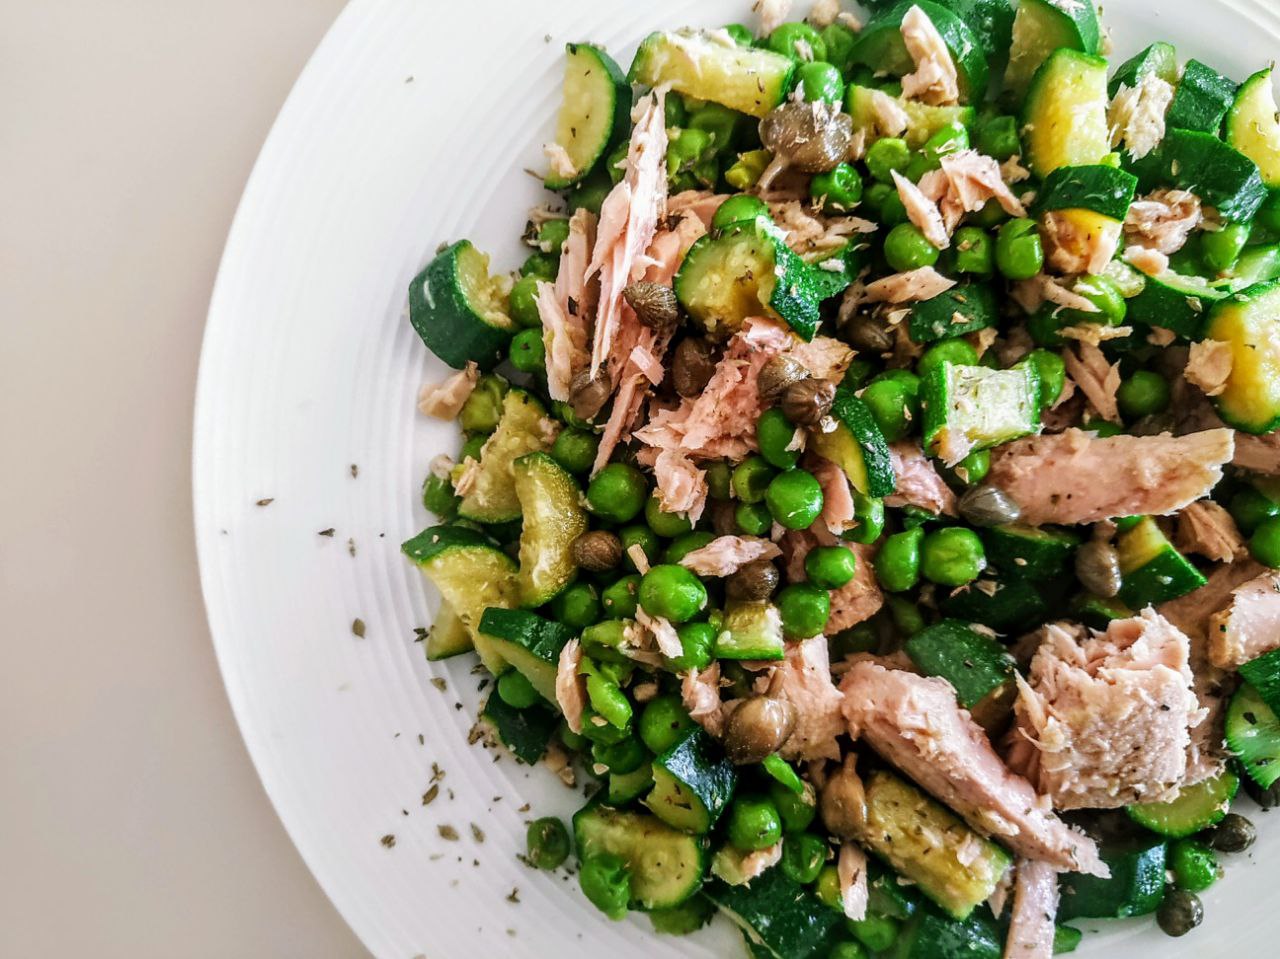 Ricette semplici e leggere senza formaggio e senza uova: insalata di piselli verdi zucchine capperi con filetti di tonno all'olio d'oliva!